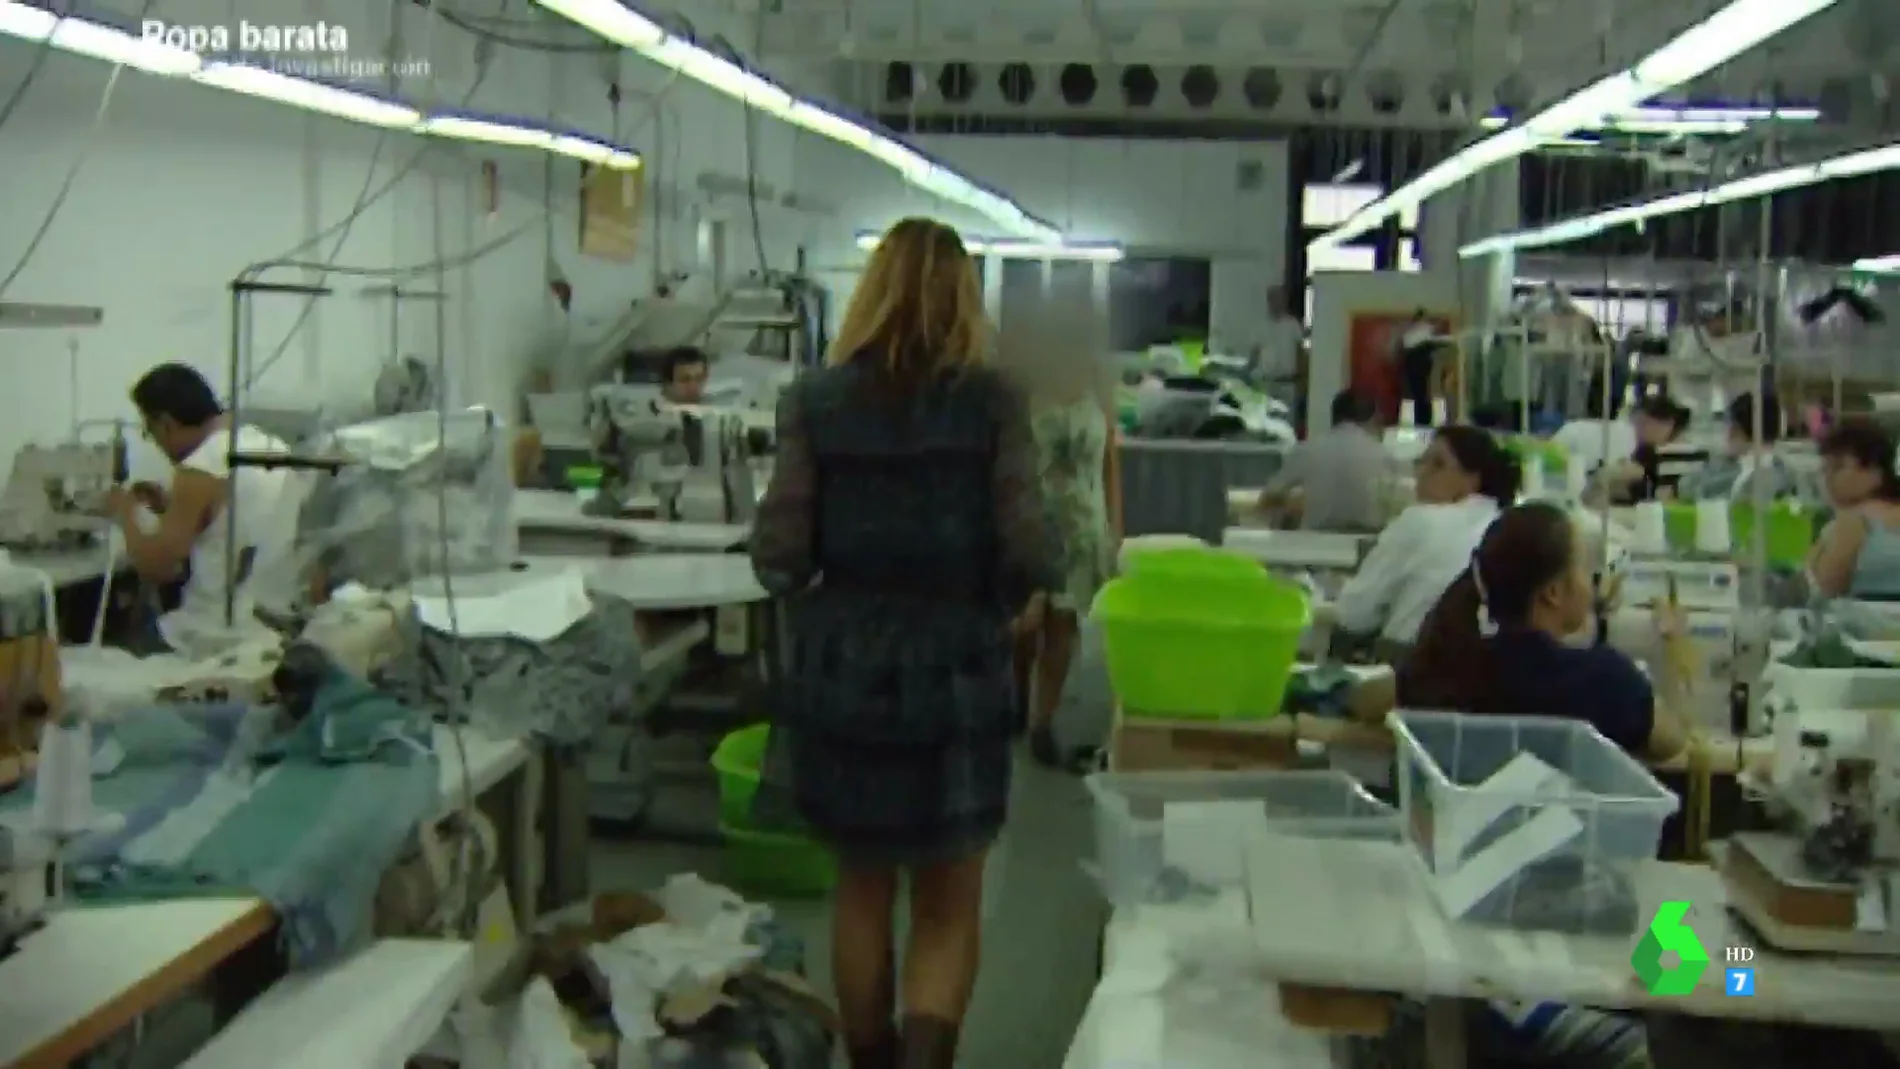 Un taller textil con trabajadores chinos que cosen 12 horas al día en Madrid, de